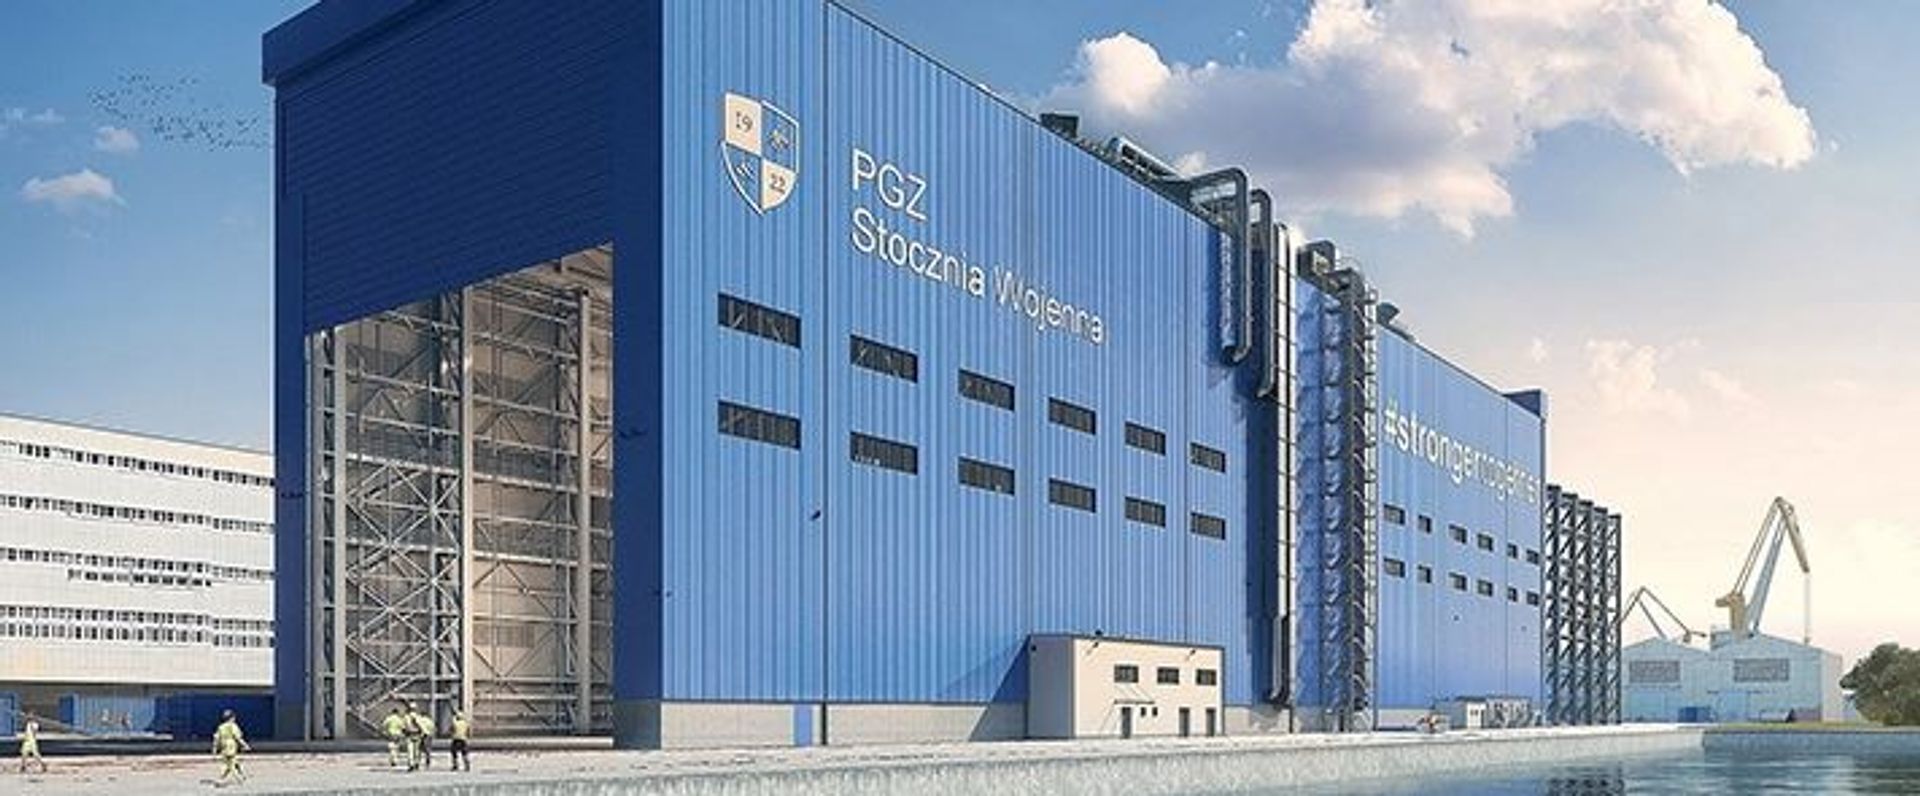 PGZ Stocznia Wojenna inwestuje w budowę nowej hali produkcyjnej w Gdyni